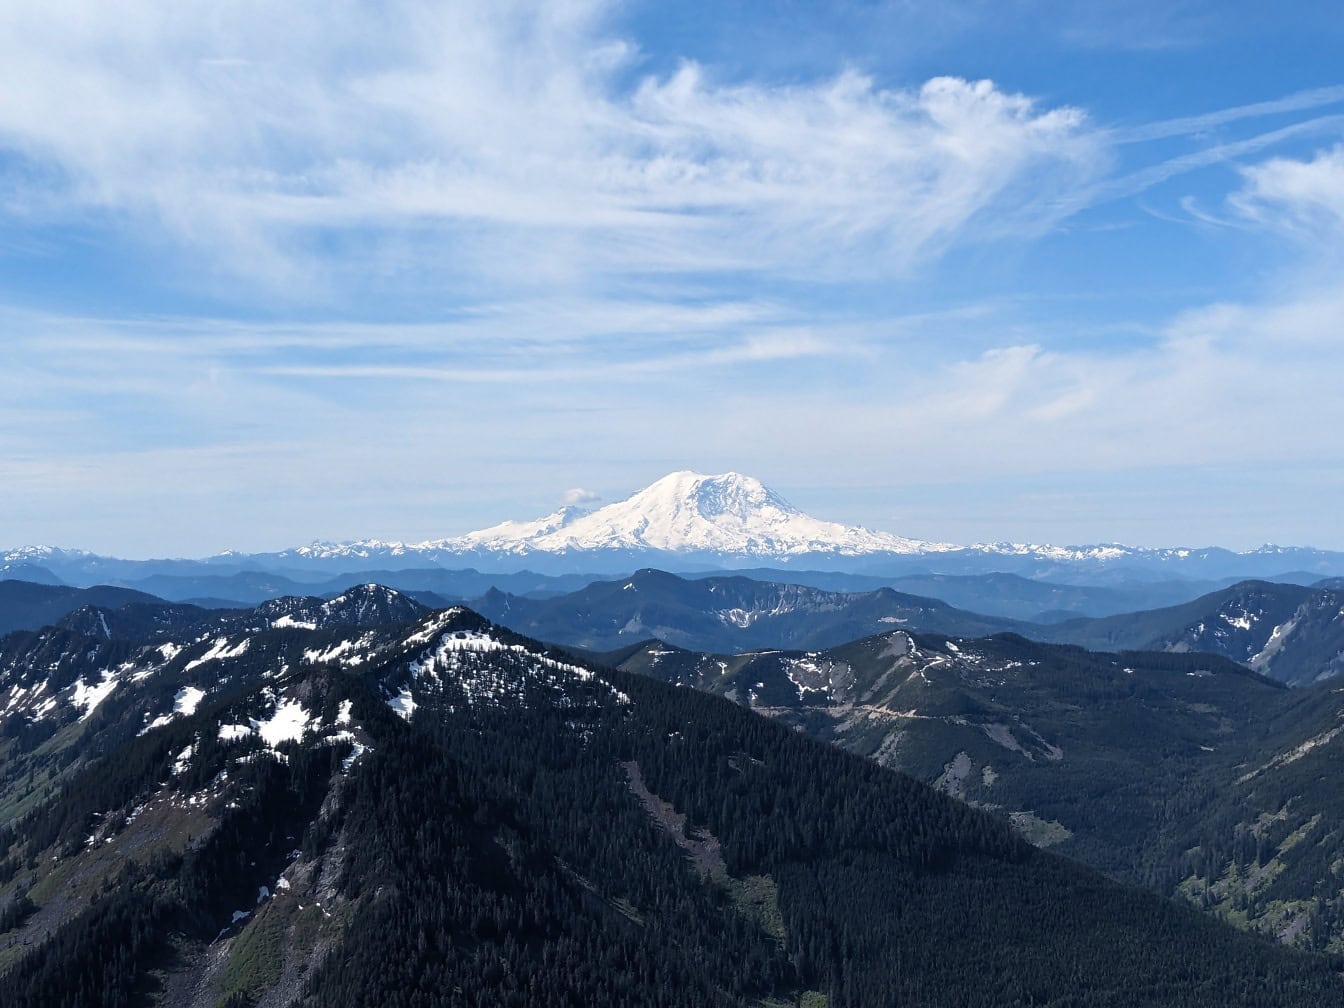 Washington milli parkında karlı bir zirveye sahip aktif bir yanardağa sahip bir Rainier Dağı’nın manzarası